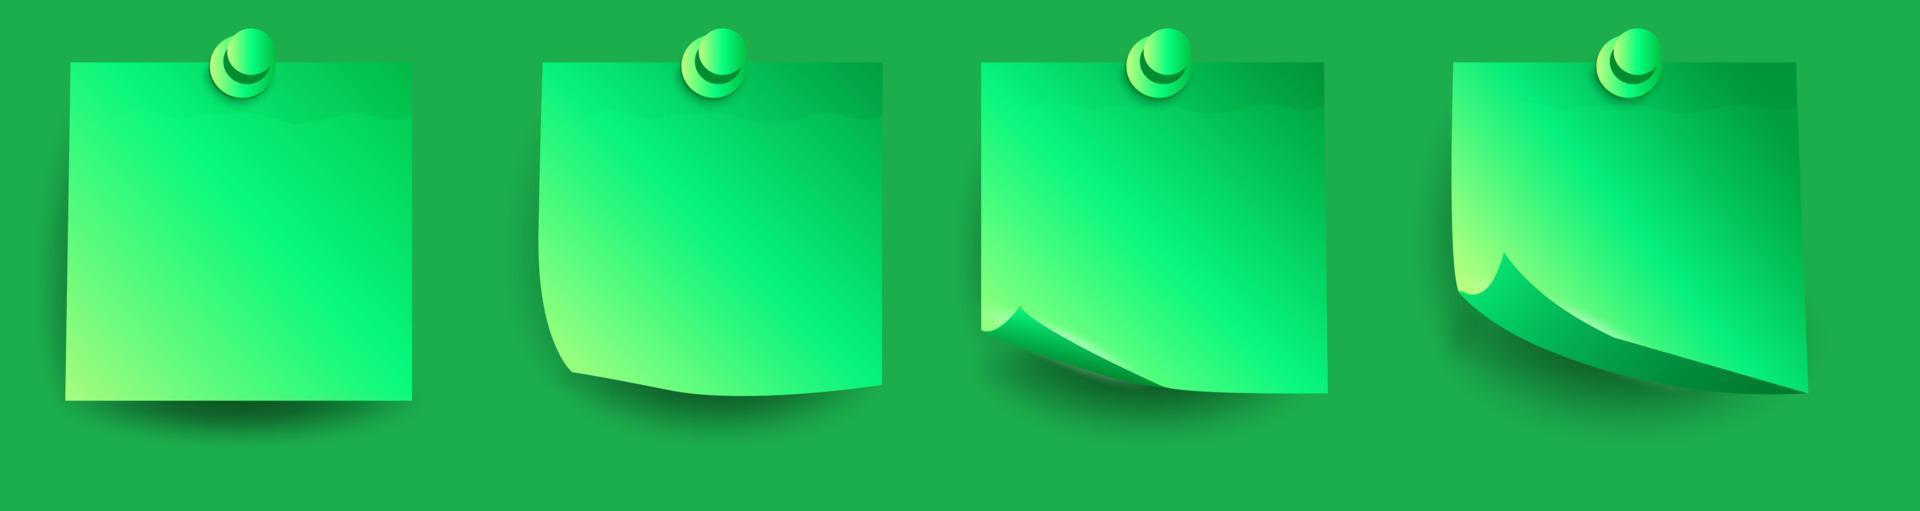 impostato di realistico verde 3d carta adesivi con arricciato angoli e ombre vettore